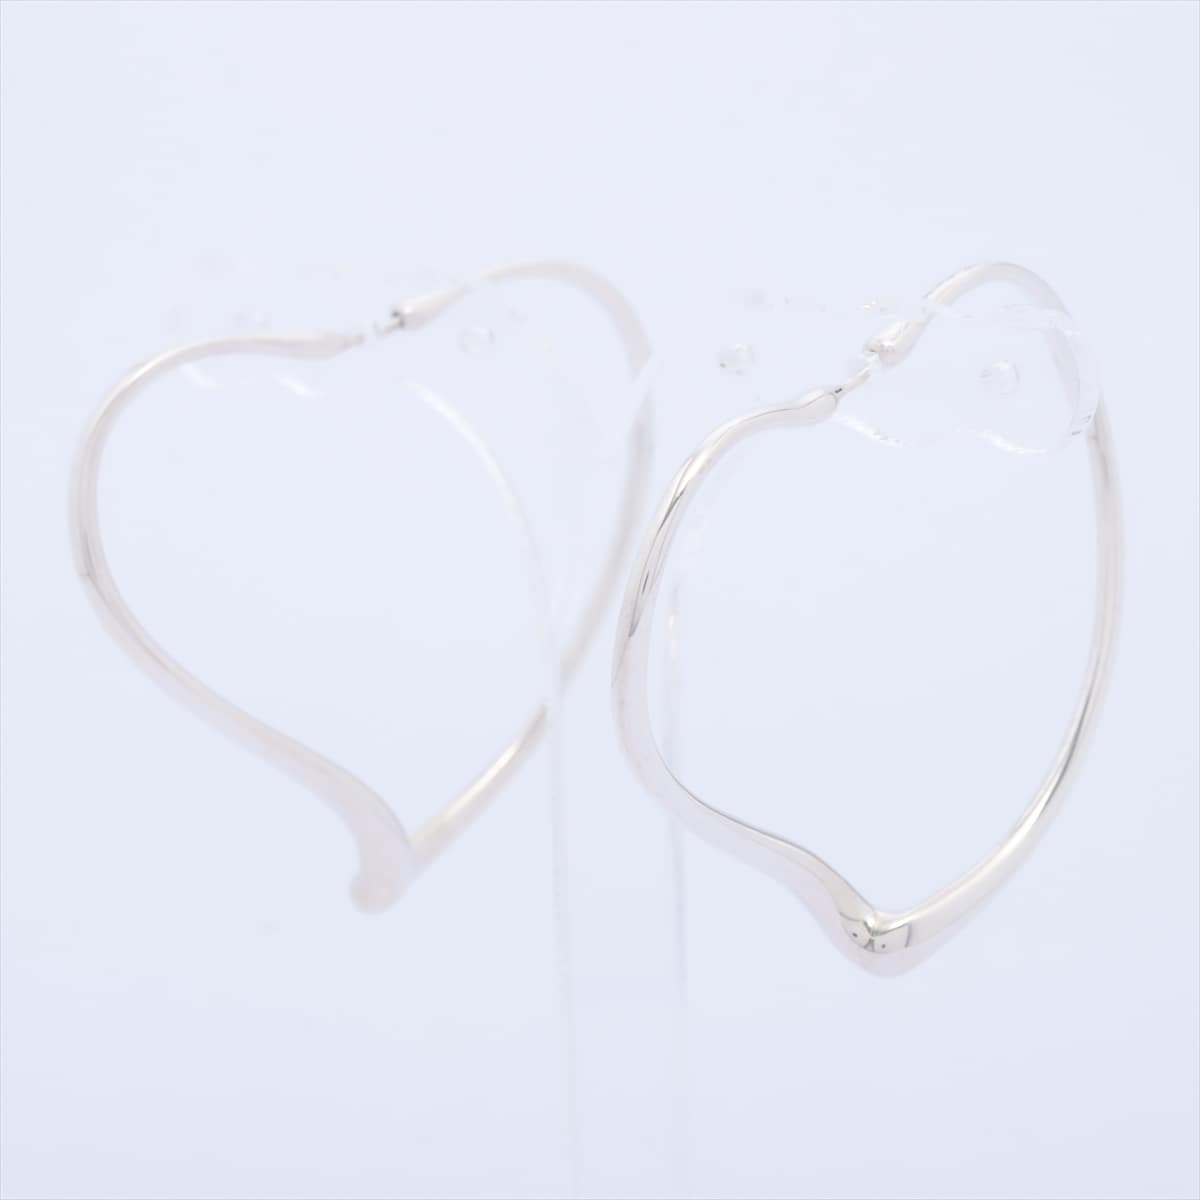 Tiffany Open Heart Piercing jewelry (for both ears) 925 9.5g Silver